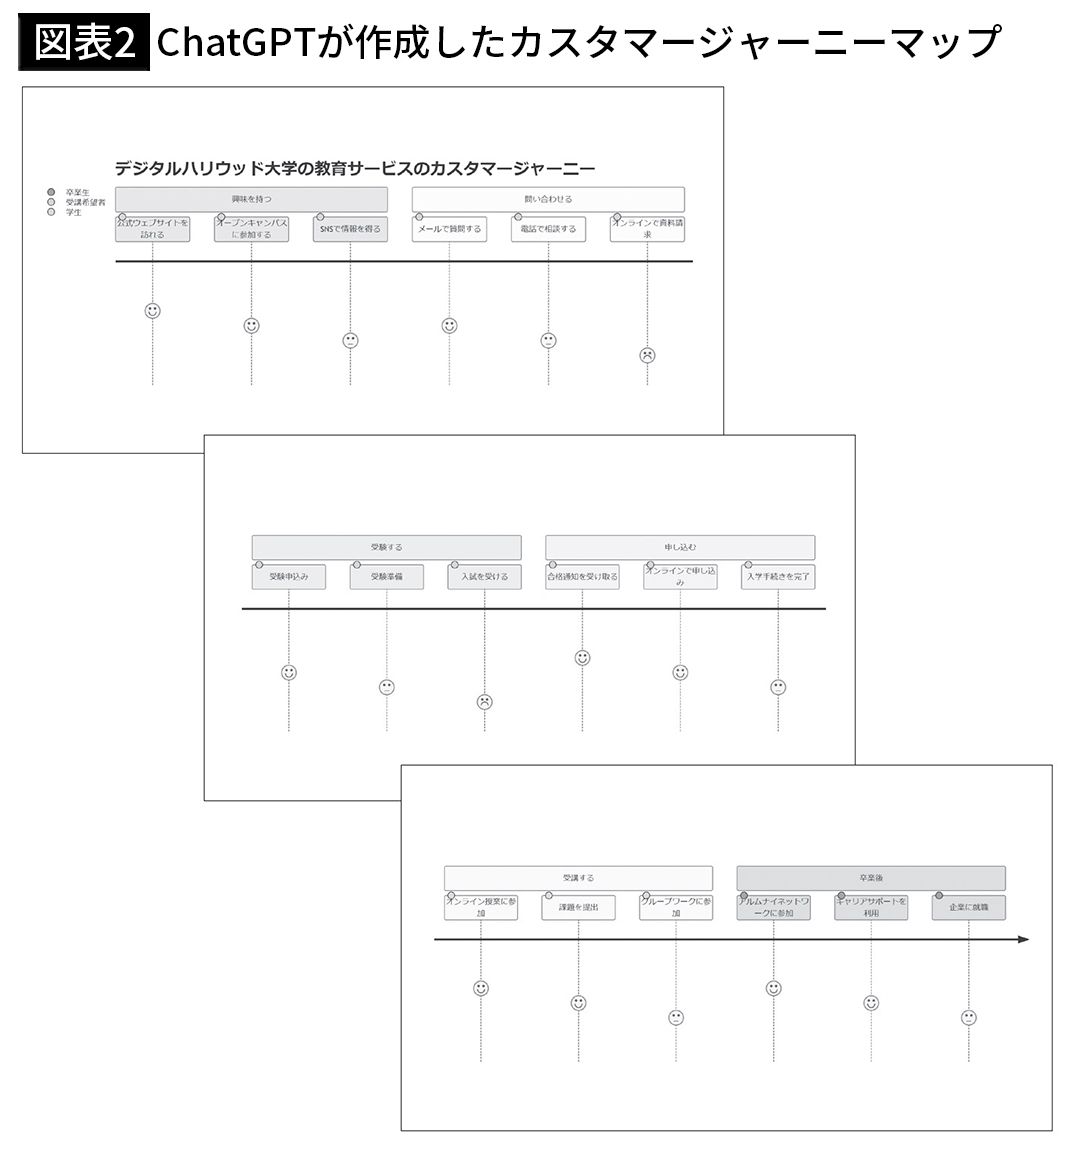 【図表2】ChatGPTが作成したカスタマージャーニーマップ